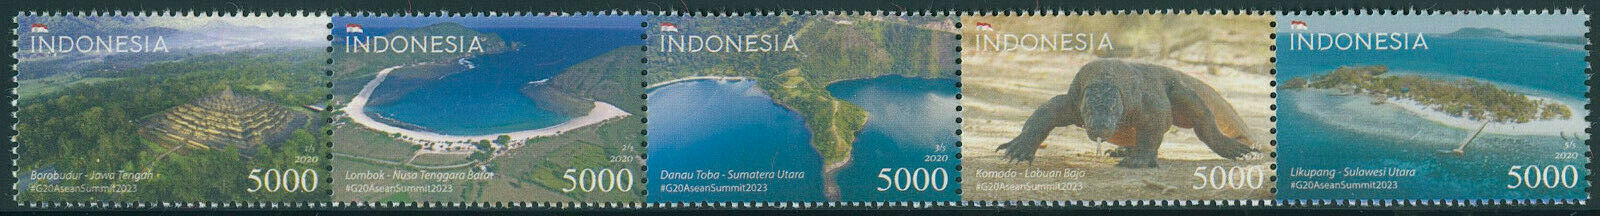 Indonesia 2020 MNH Landscapes Stamps Wisata Super Prioritas Tourism 5v Strip